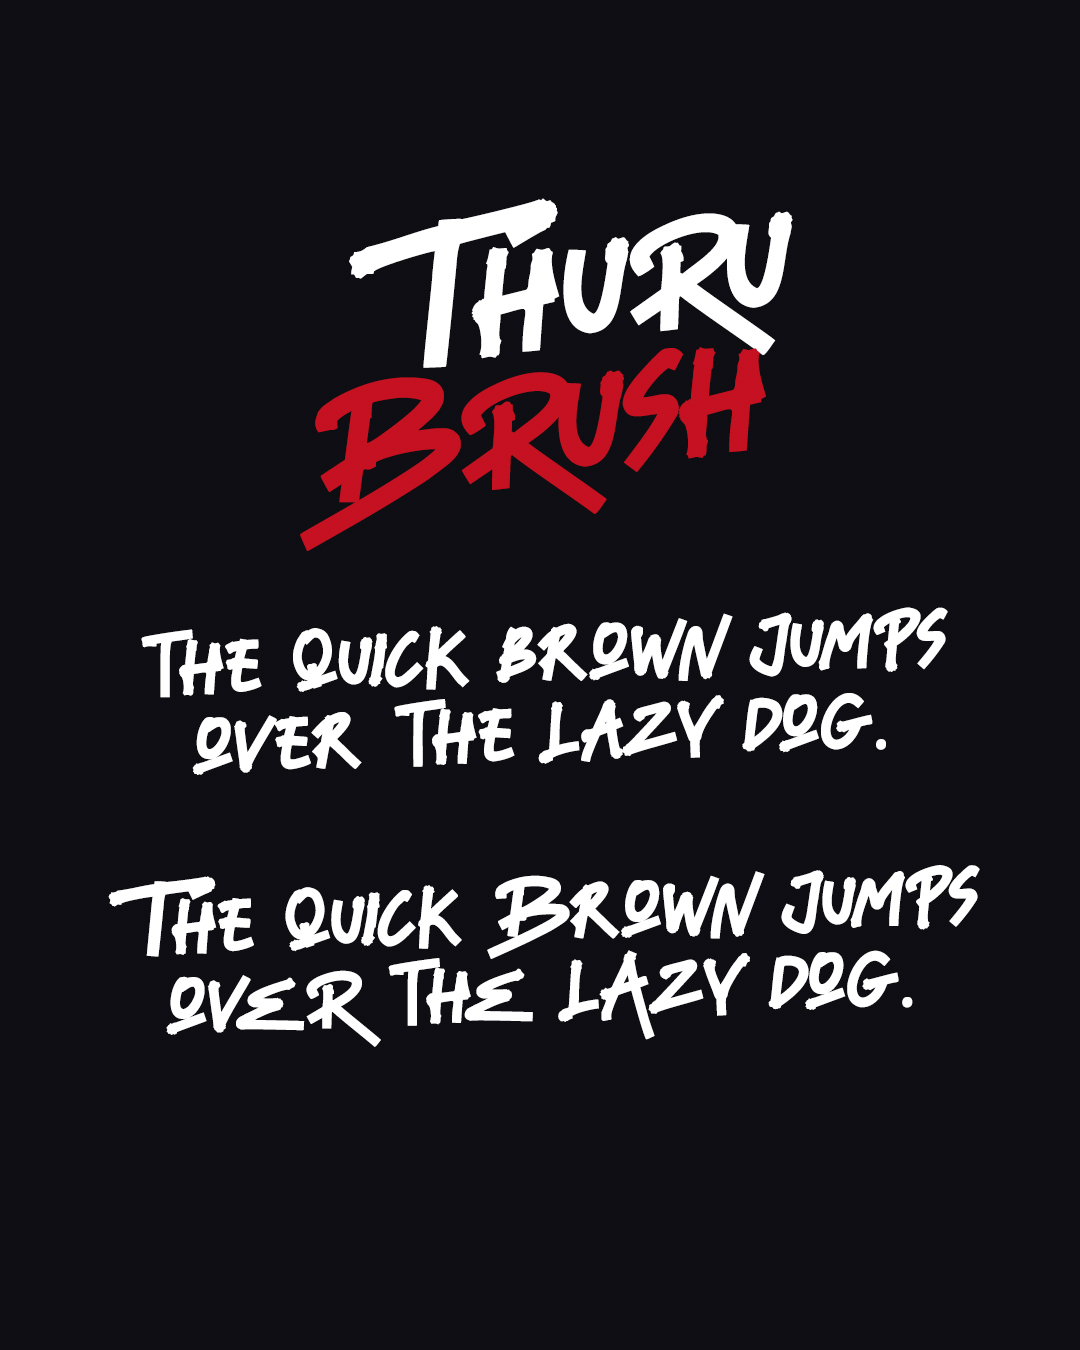 Thuru Brush